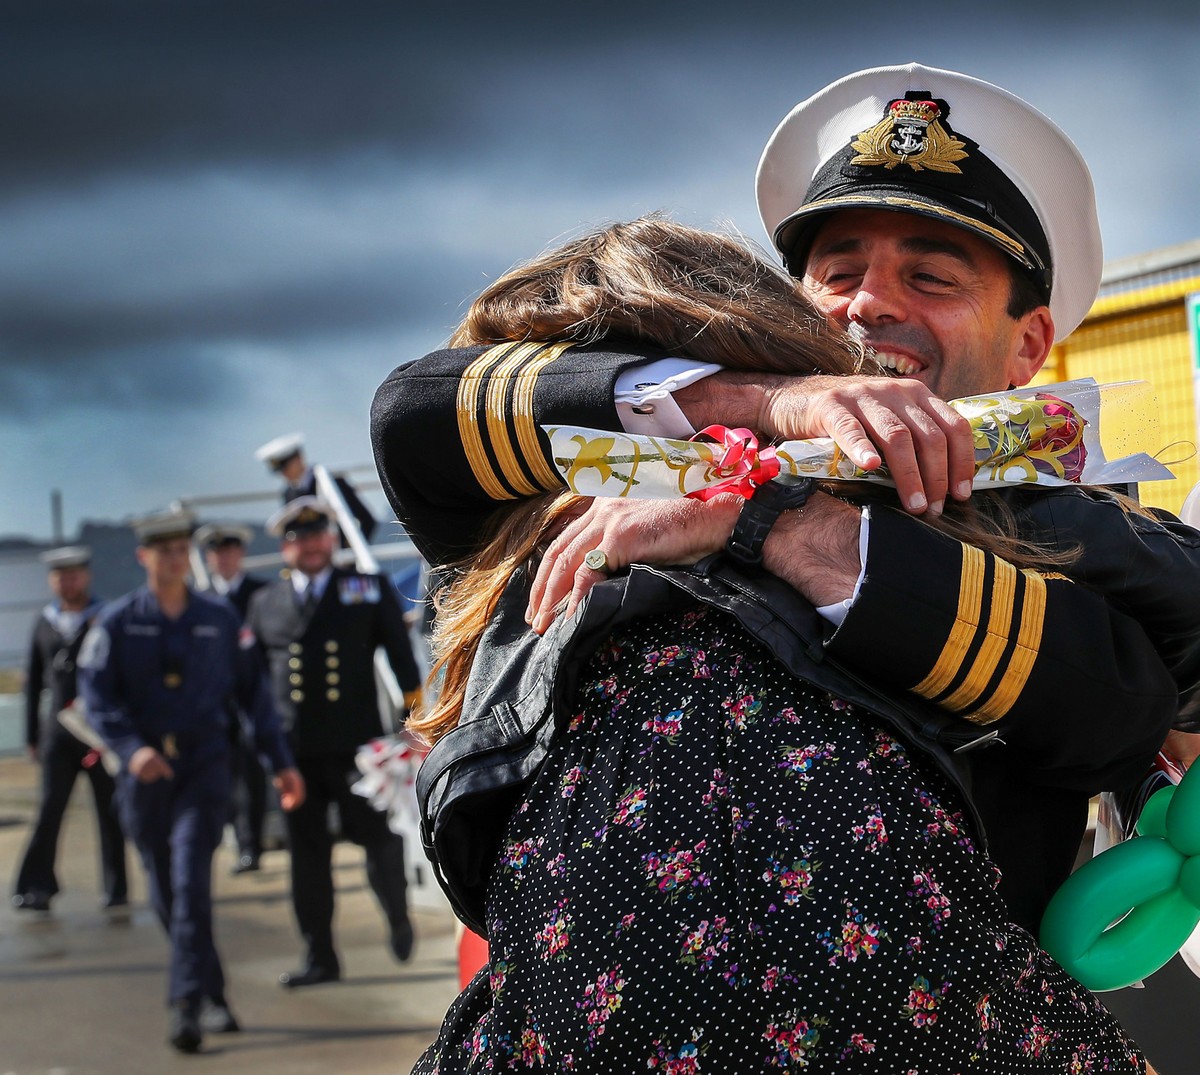 Лучшие снимки с конкурса военной фотографии ВМС Великобритании